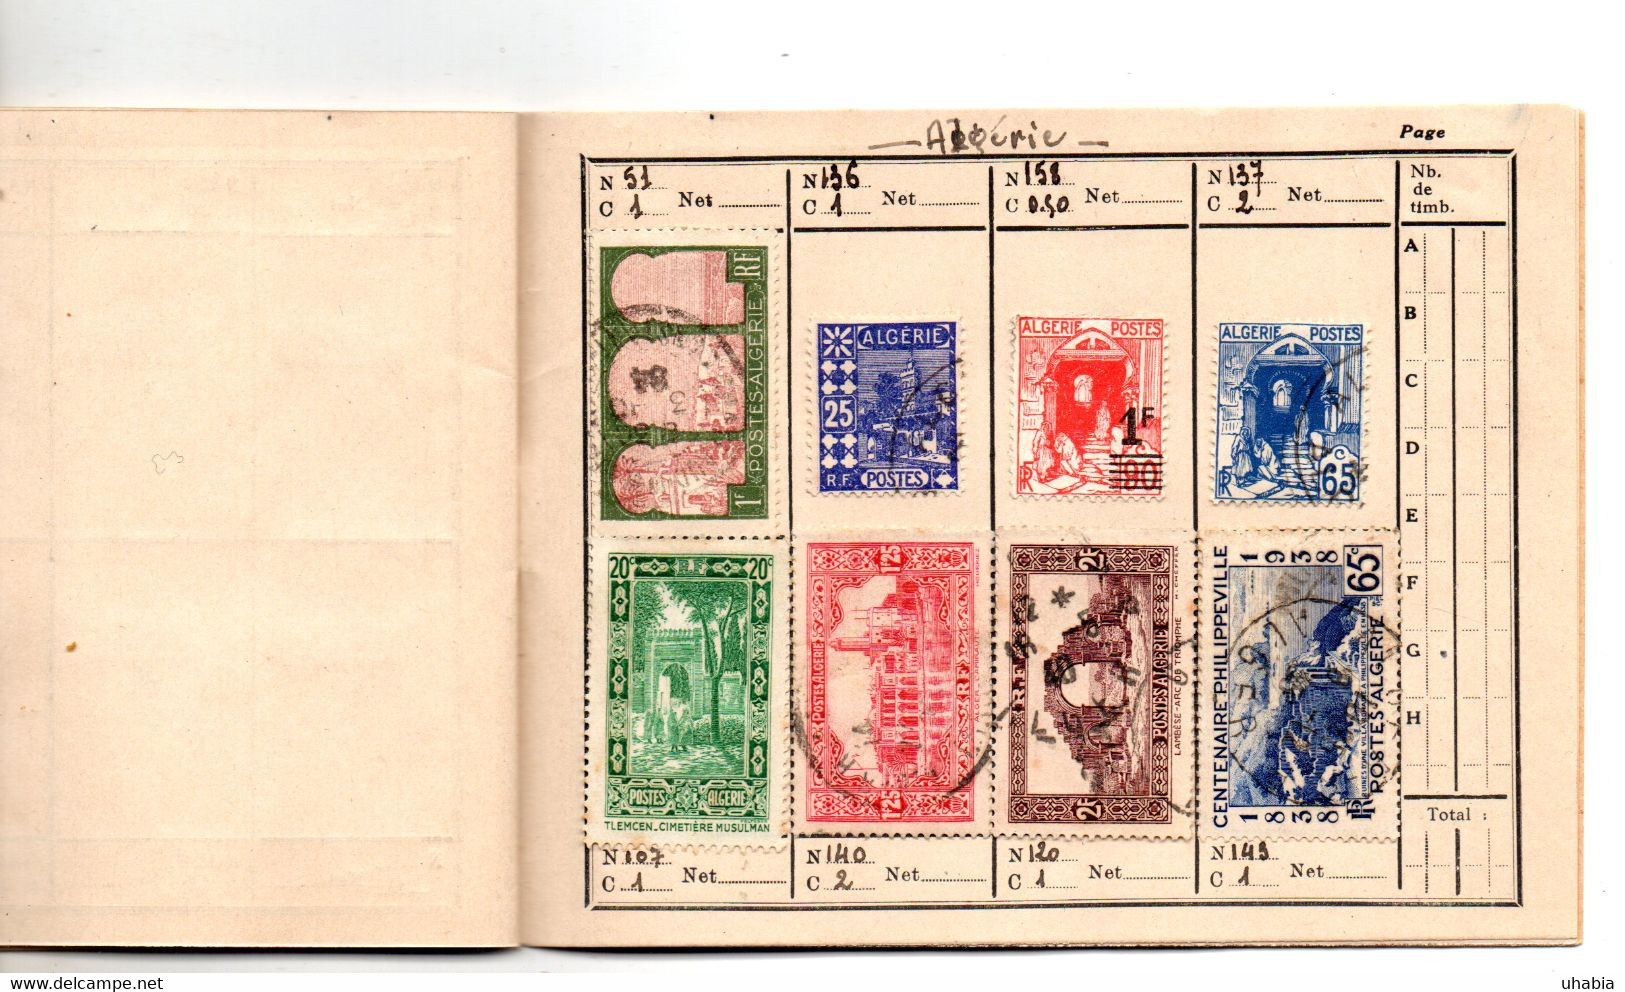 Grand Liban. Syrie. algerie. Carnet de liaison philatelique. 97 timbres voir description.